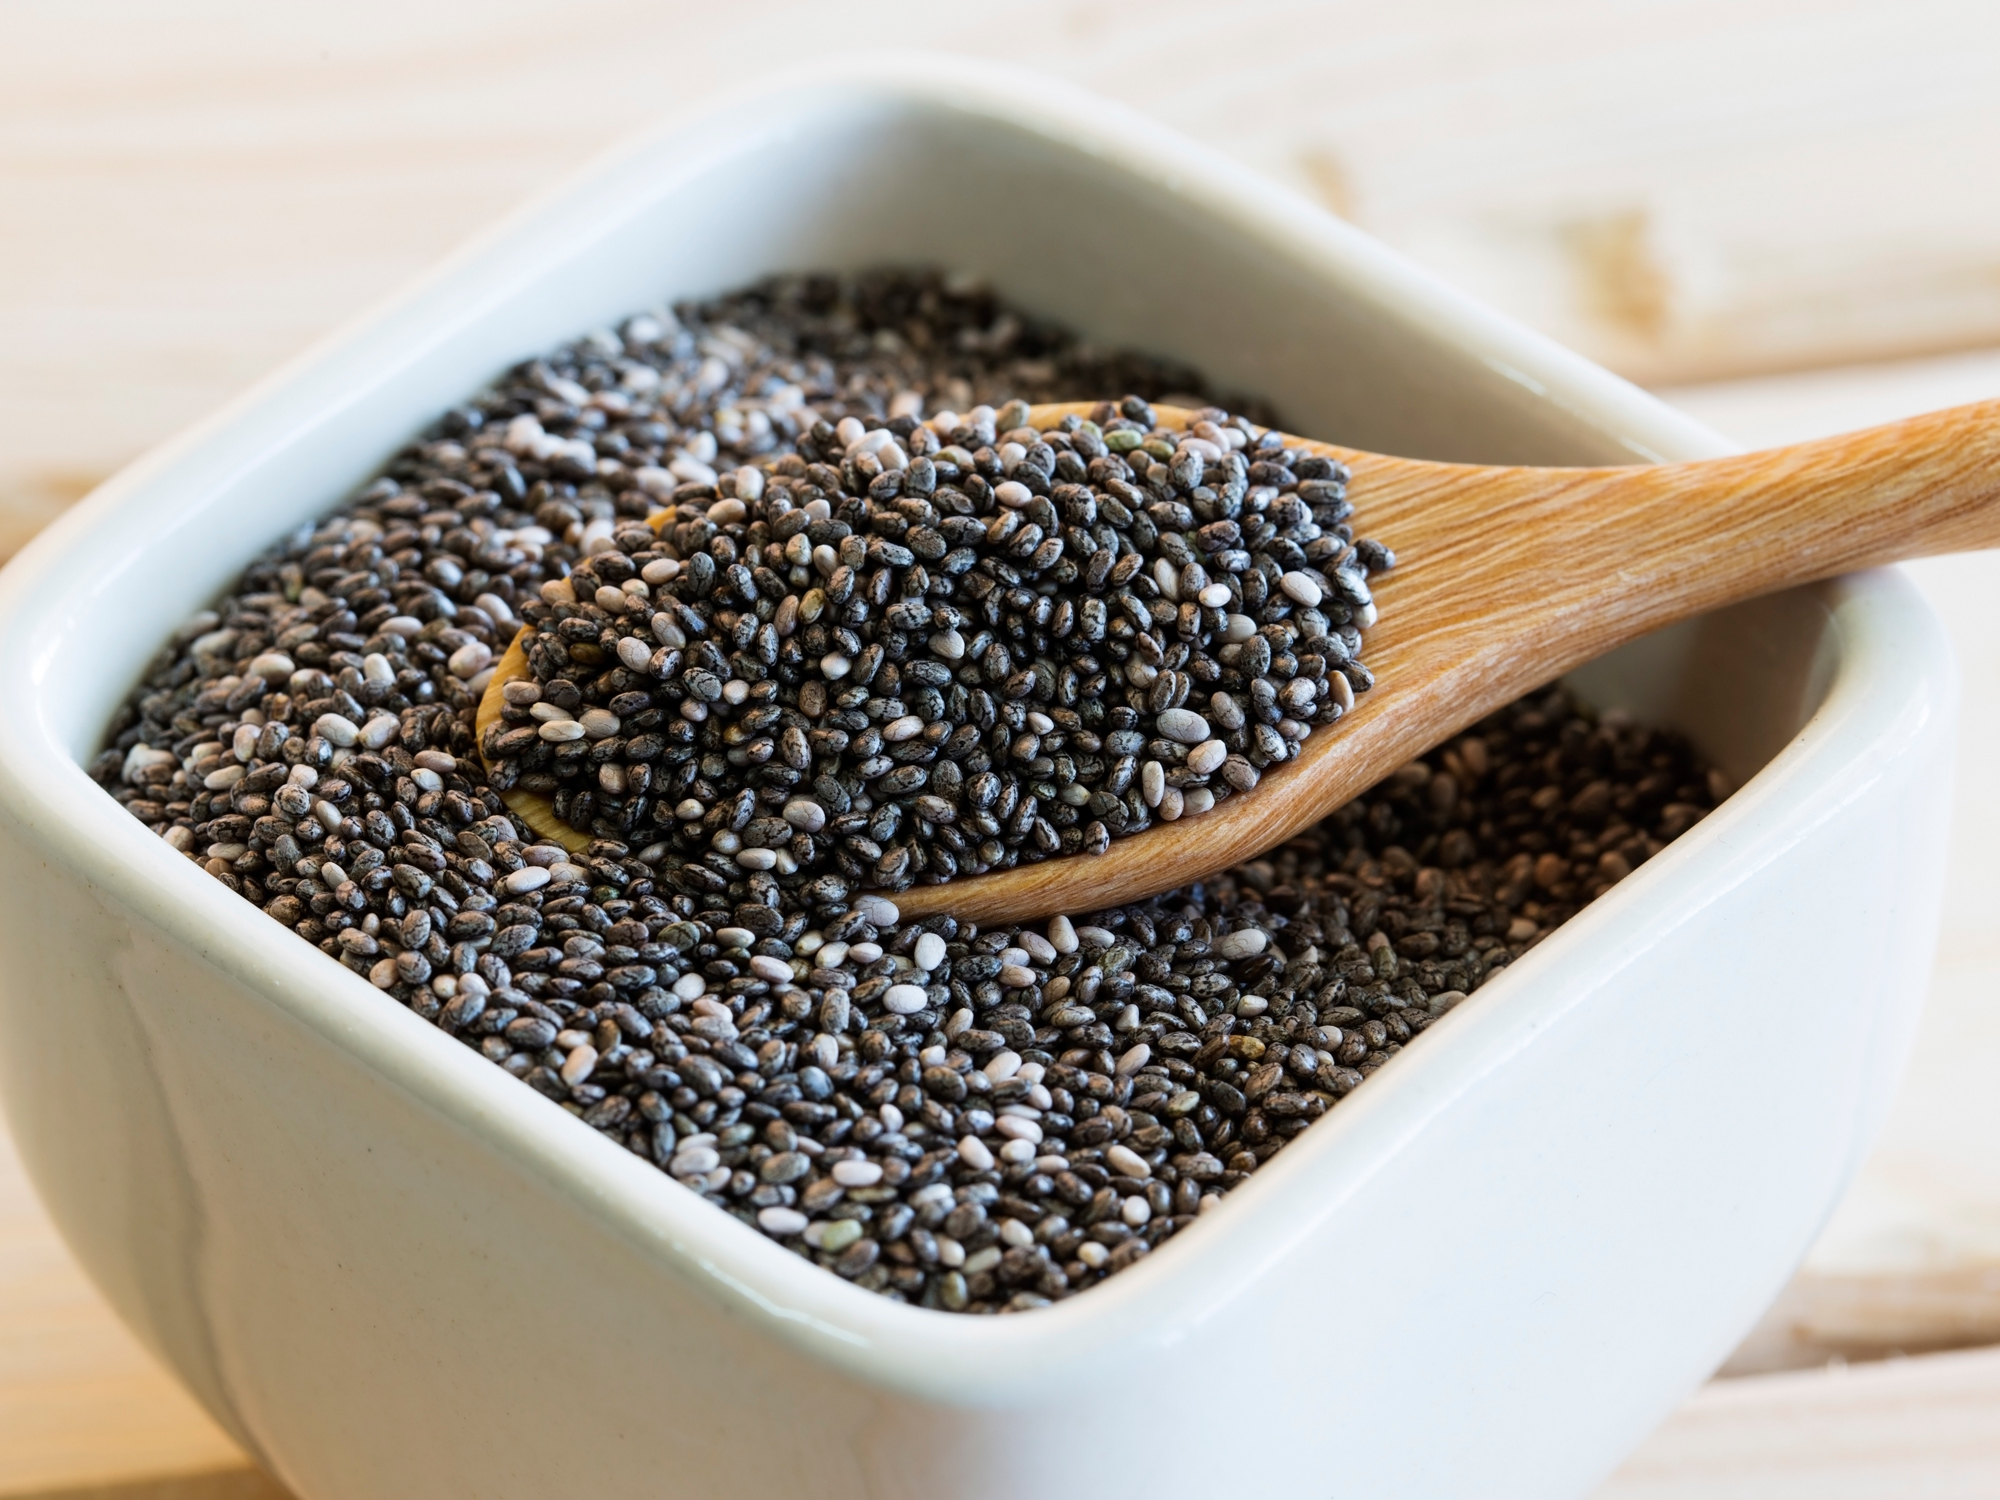 Семена чиа: польза и вред, как принимать для похудения, рецепты